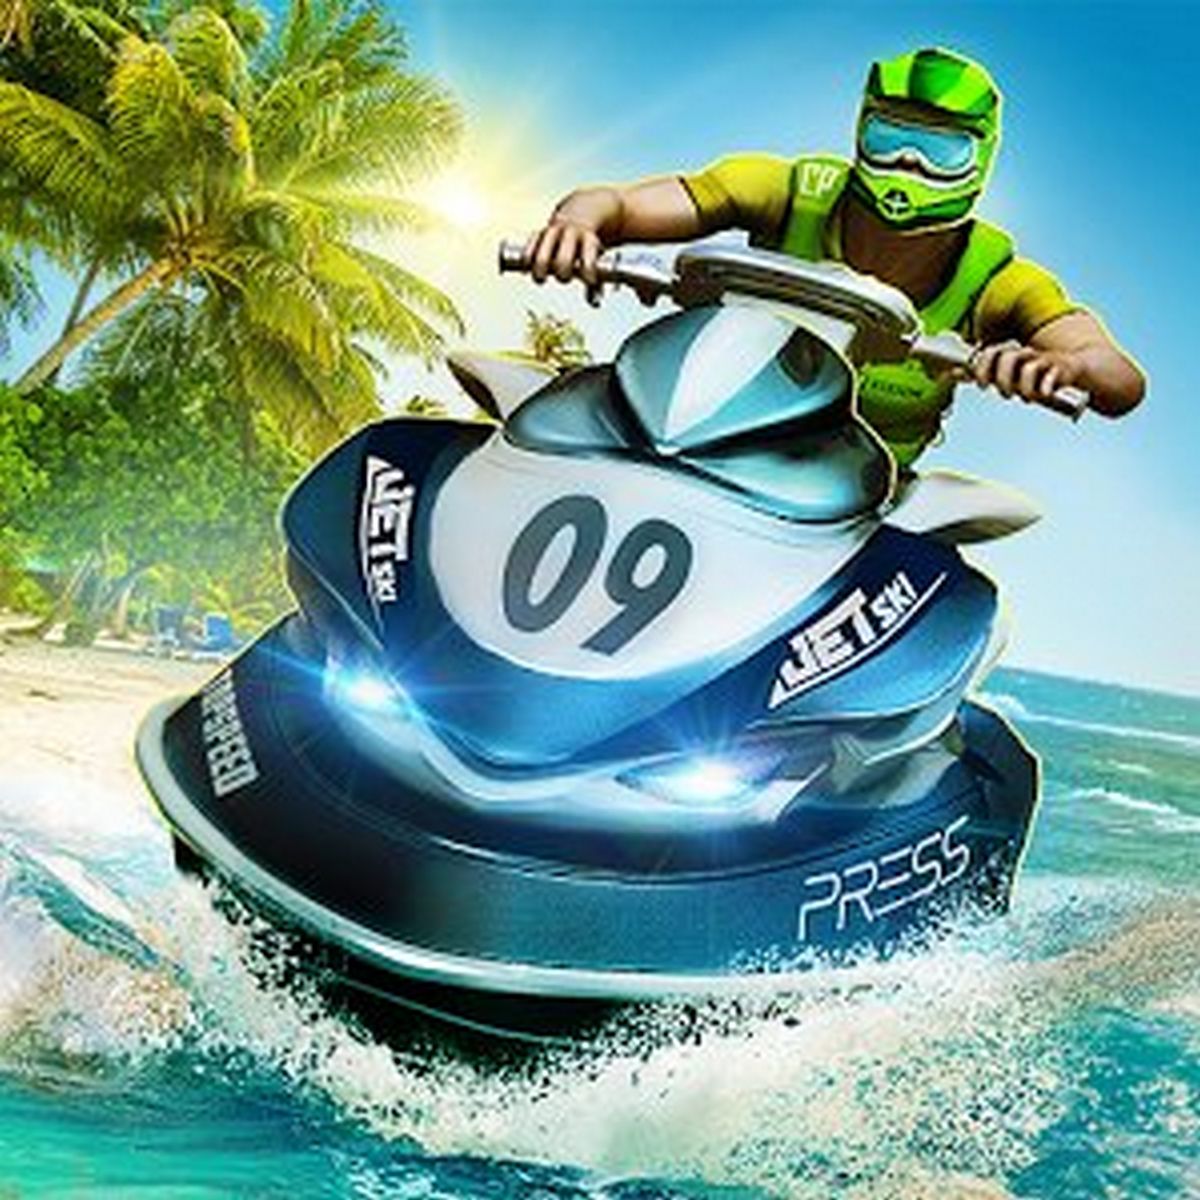 Top Boat Racing Simulator 3D APK MOD (Premium/Infinite Money) v1.06.3